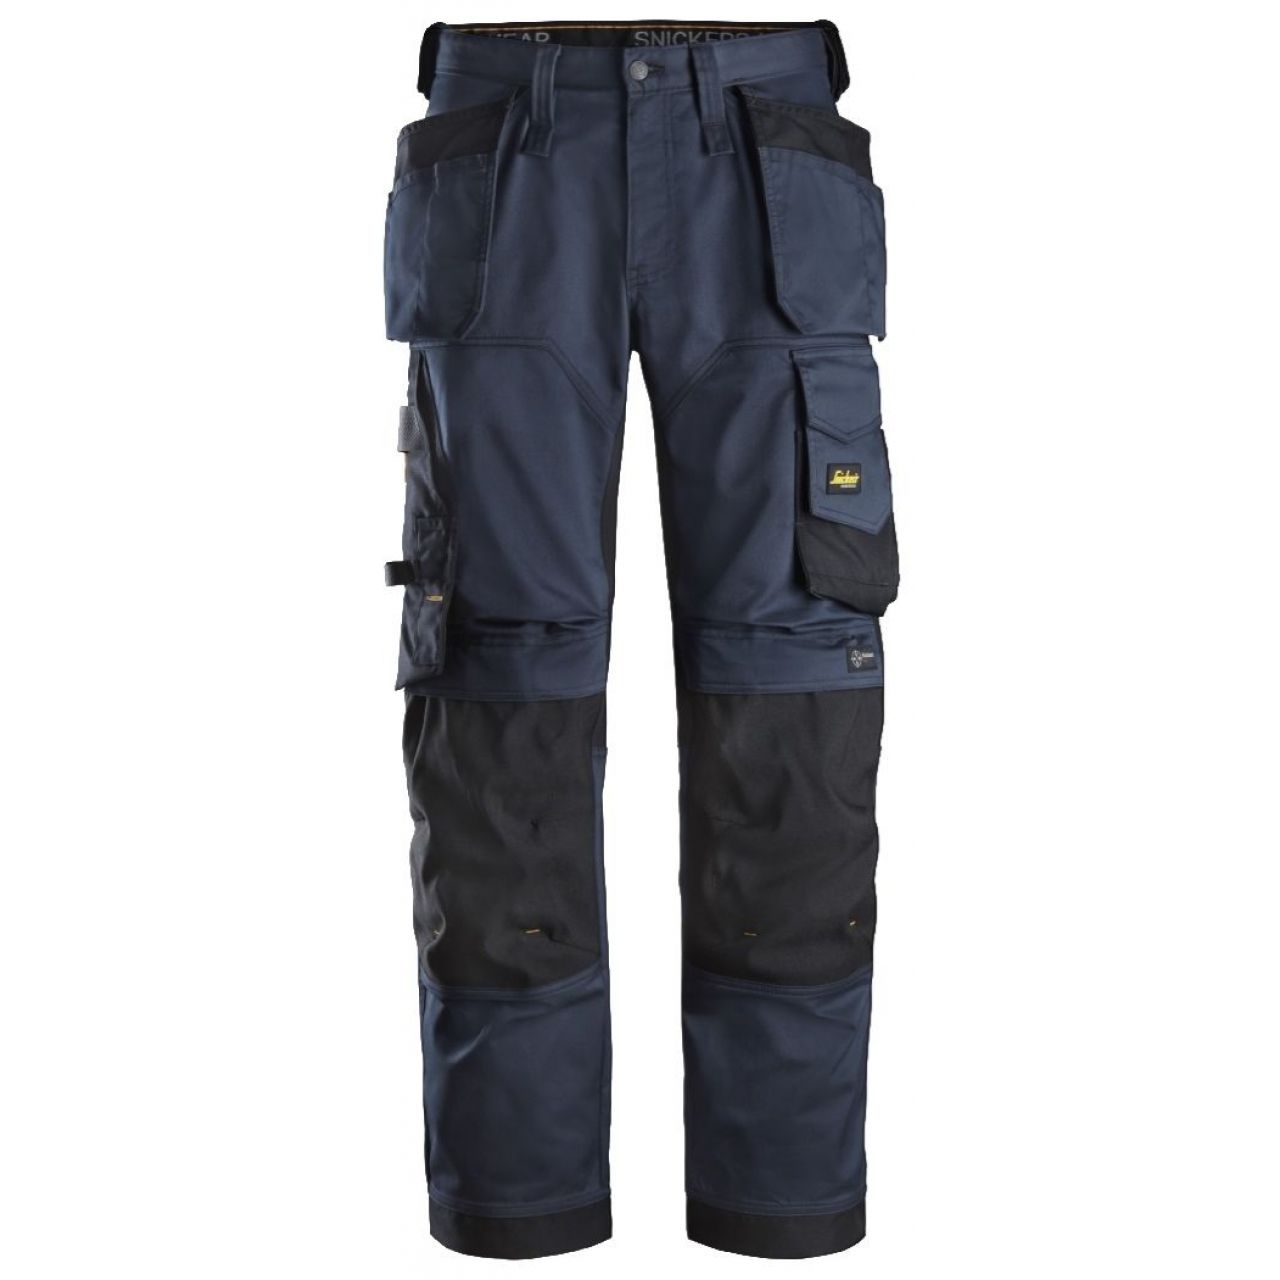 Pantalon elastico ajuste holgado AllroundWork bolsillos flotantes azul marino-negro talla 158